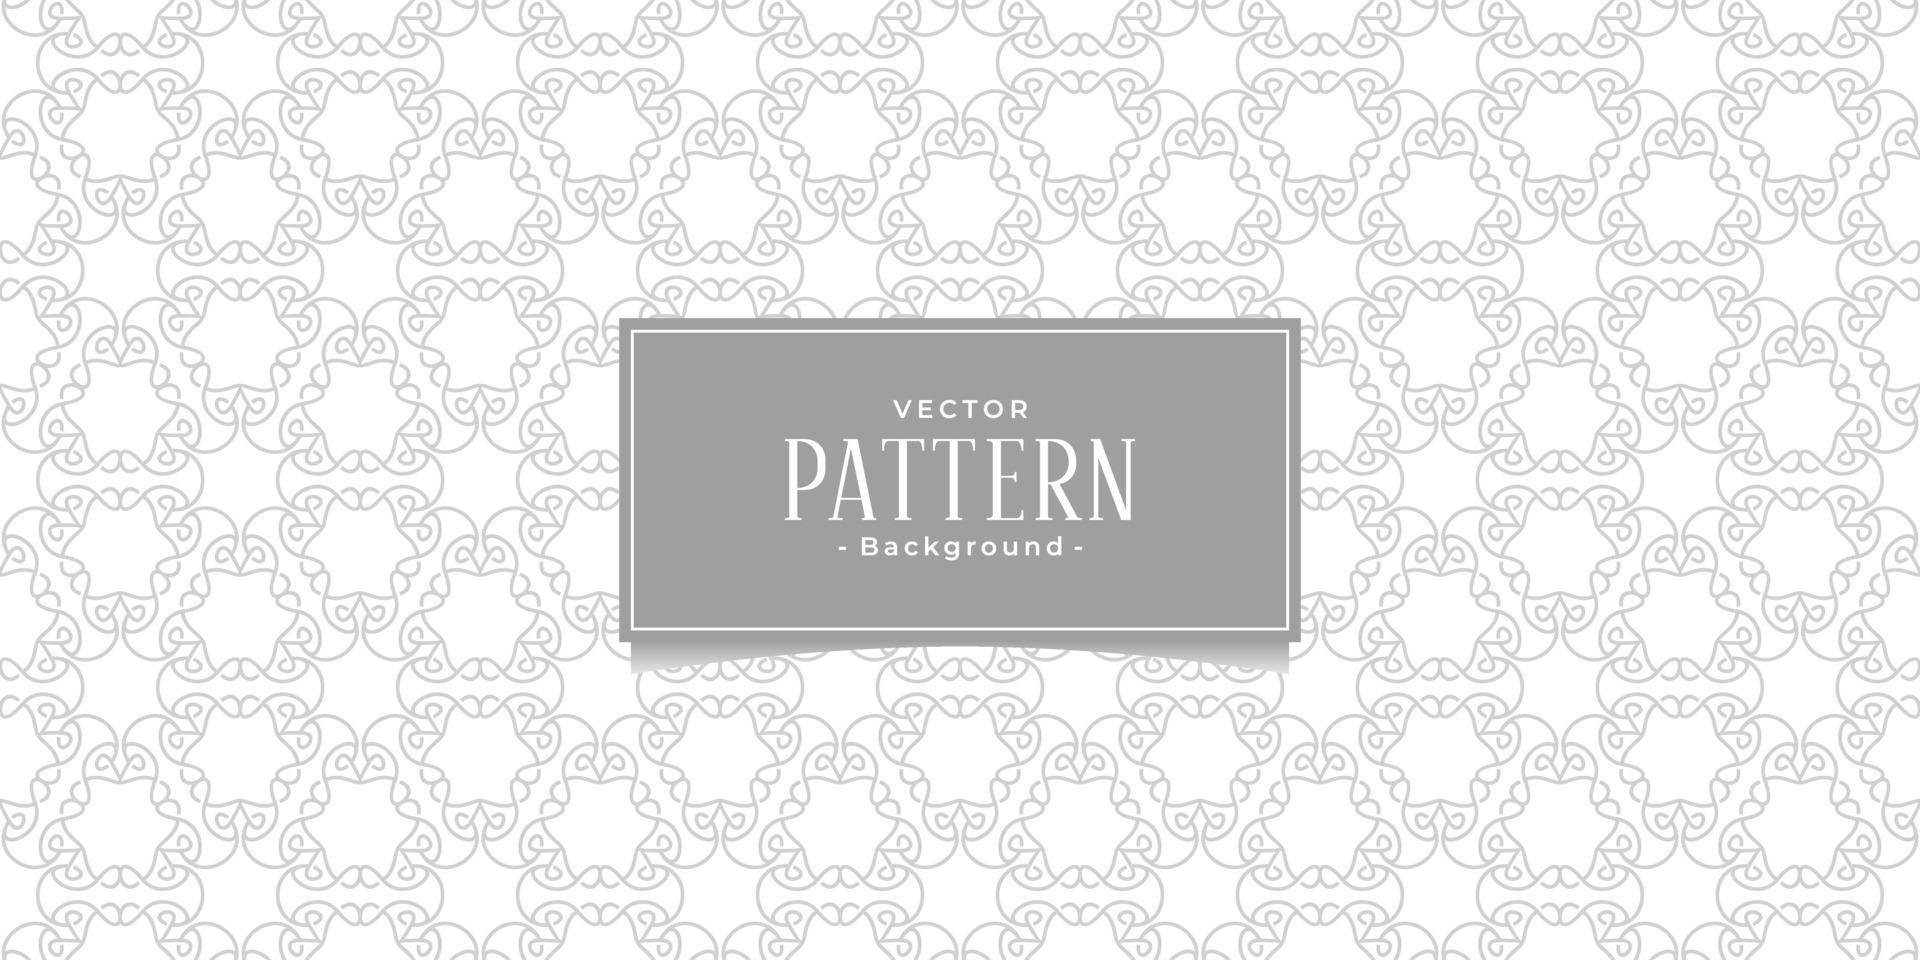 línea de forma perfecta patrón abstracto estilo oriental, inspiración de fondo de colores gris y blanco. vector